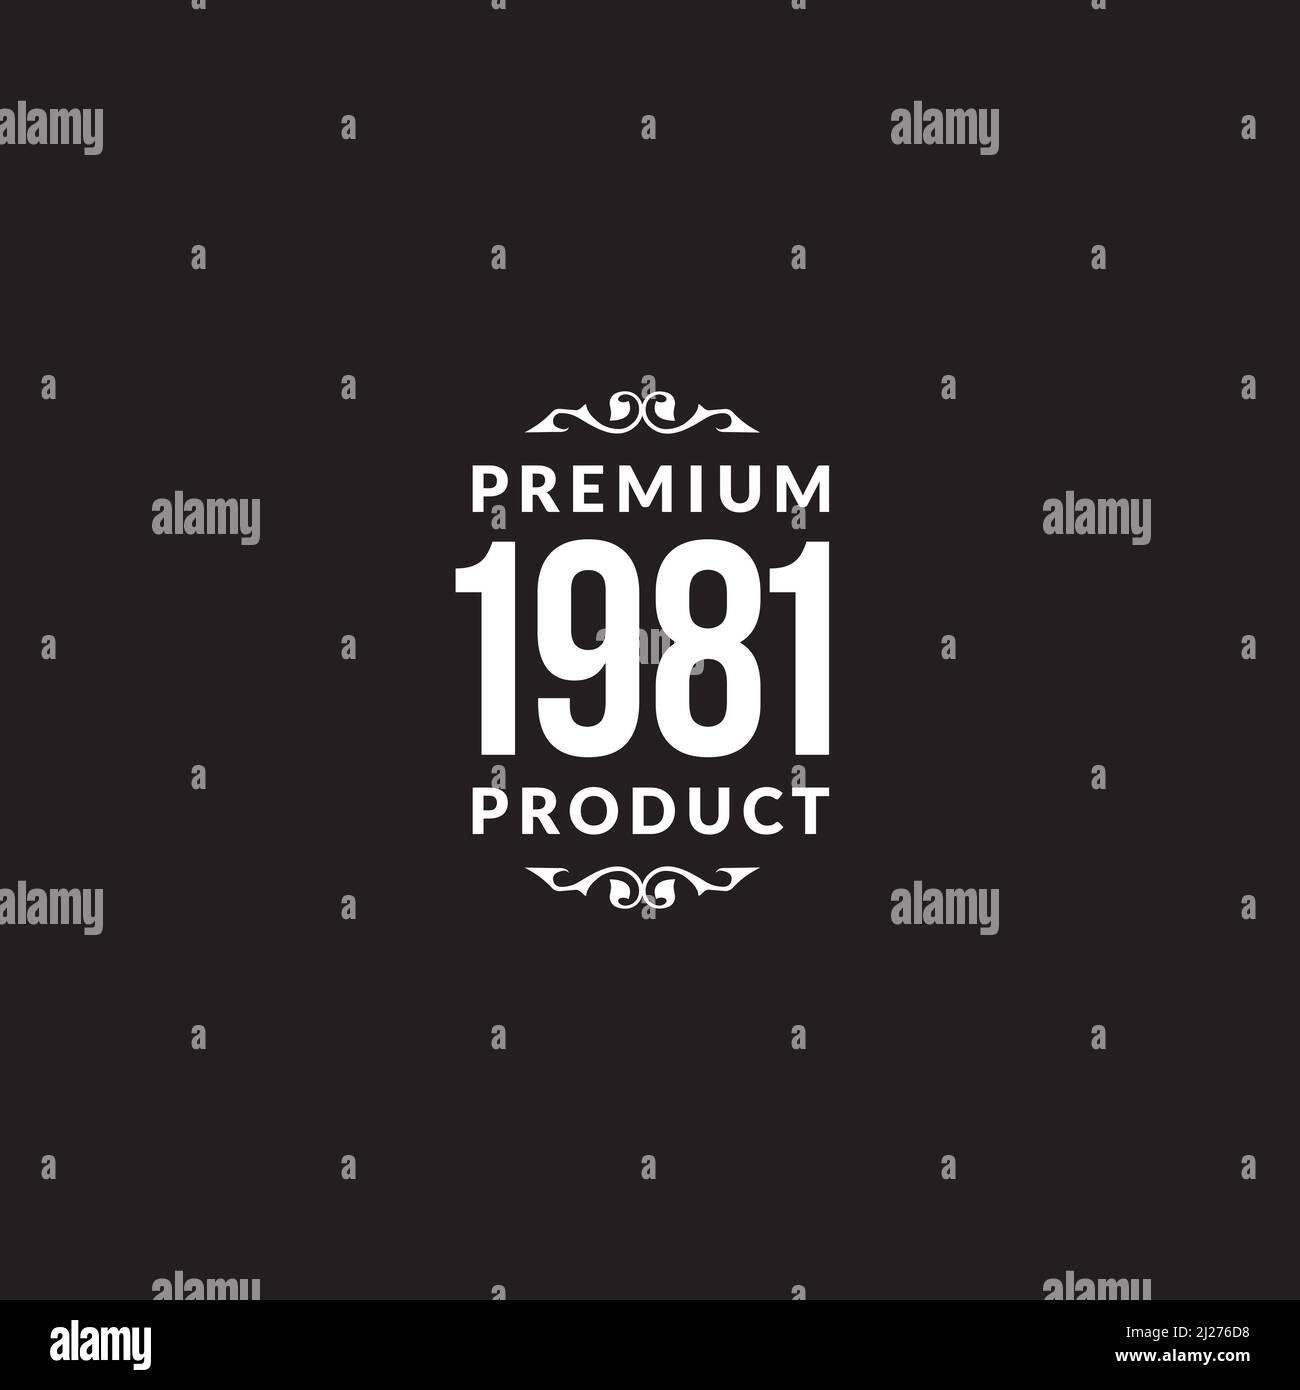 Premium 1981 Product graphic design Stock Vector